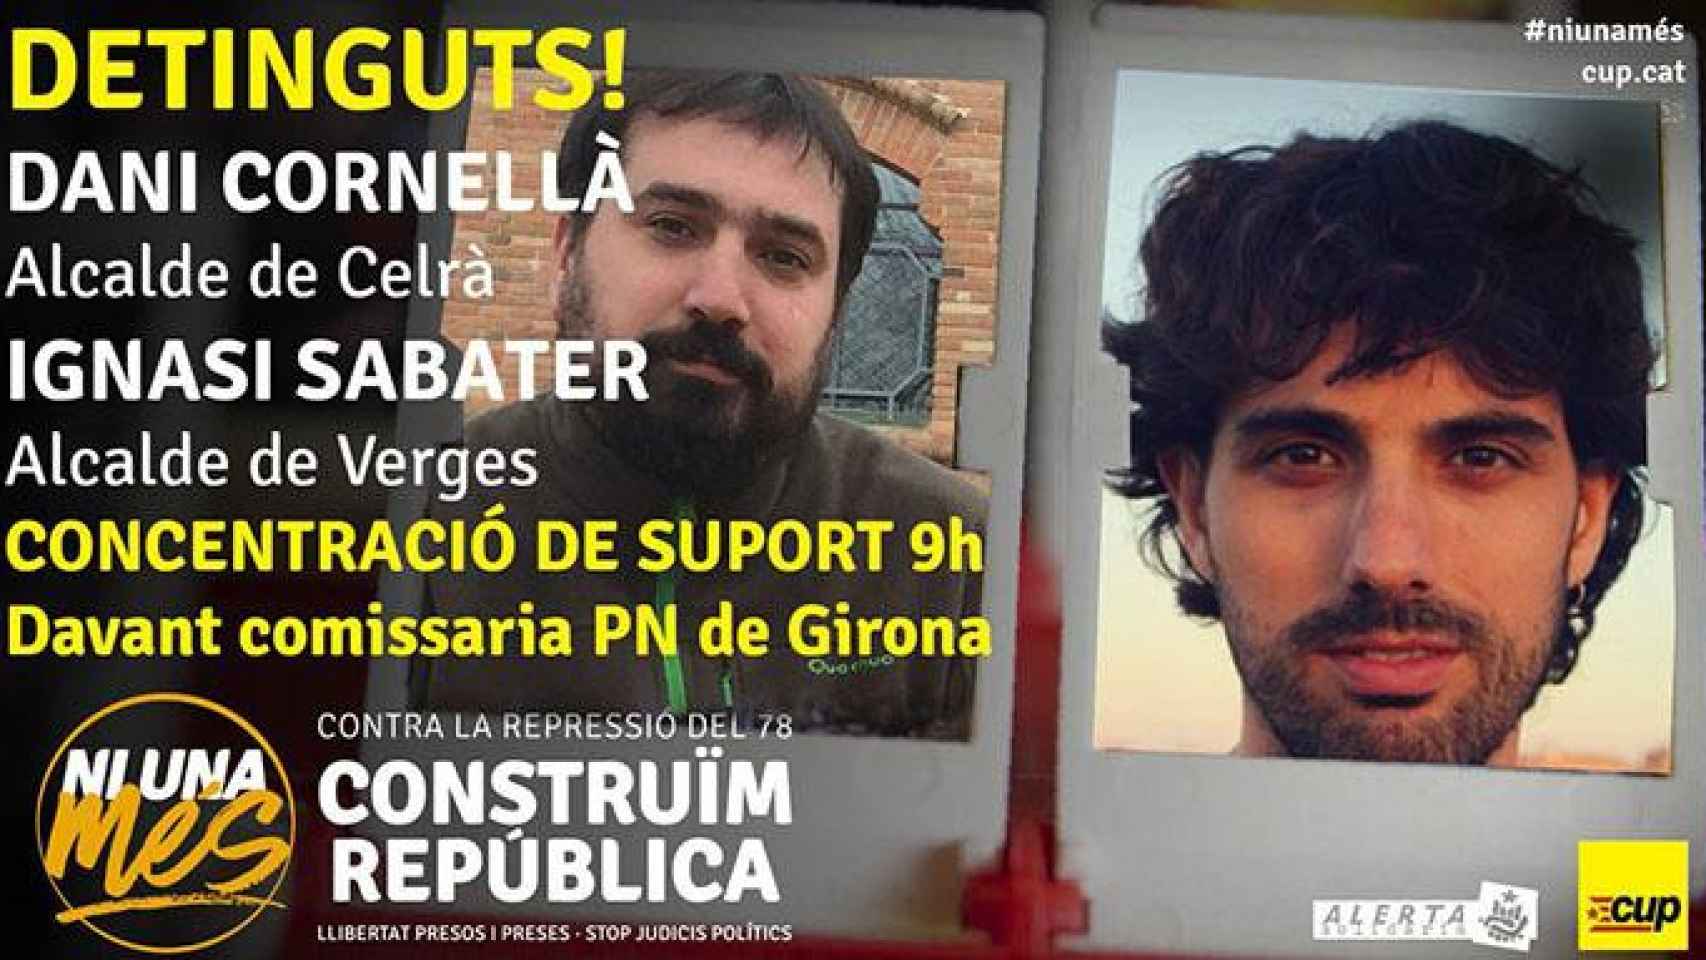 Cartel de la CUP en la que llama a la movilización por los arrestos de los alcaldes de Celrà, Dani Cornellà, y Verges, Ignasi Sabater / CUP